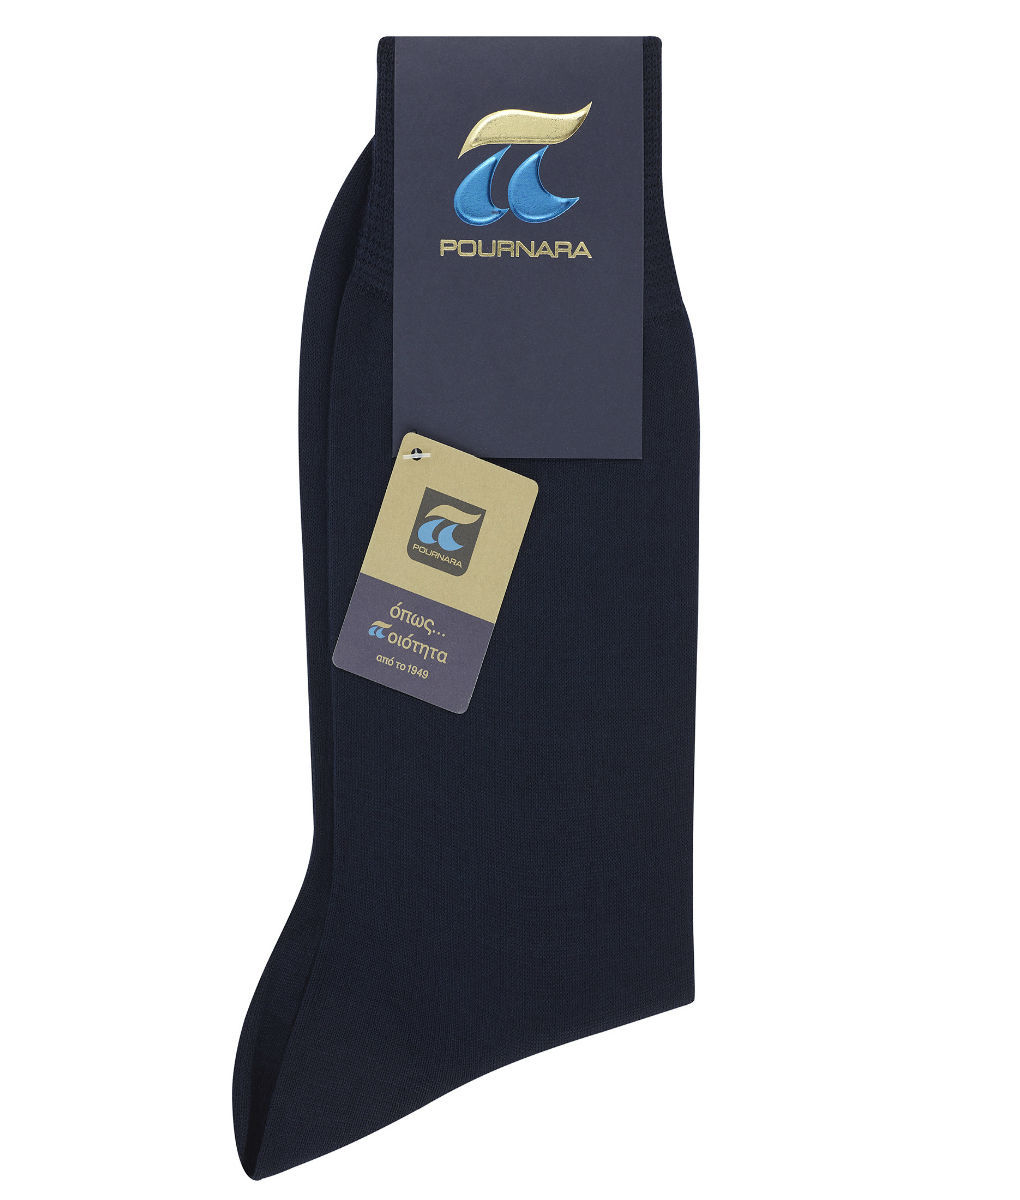 Μπλε ανδρική κάλτσα 100% Μερσεριζέ βαμβάκι Πουρνάρας P110-15 P110C Μπλε